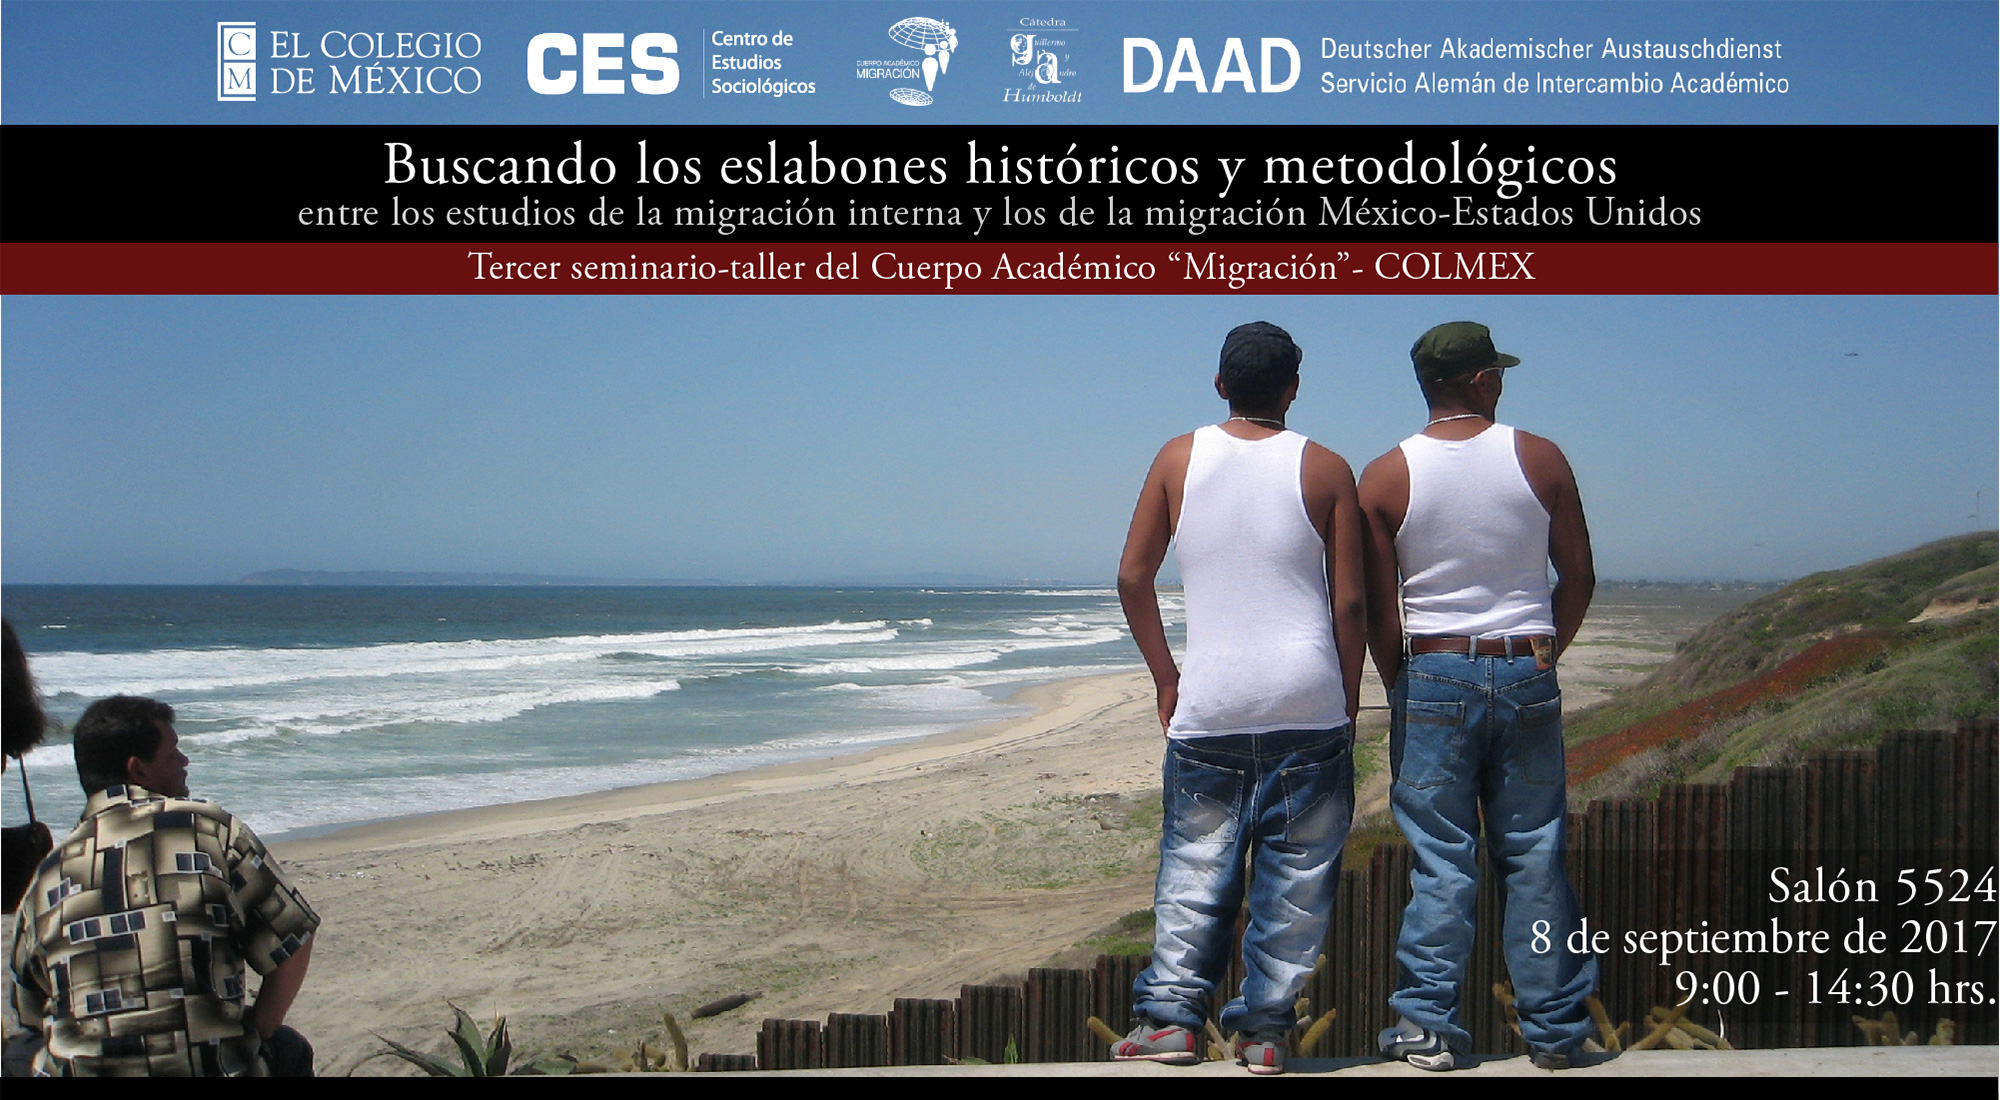 Buscando los eslabones históricos y metodológicos entre los estudios de la migración interna y los de la migración México-Estados Unidos